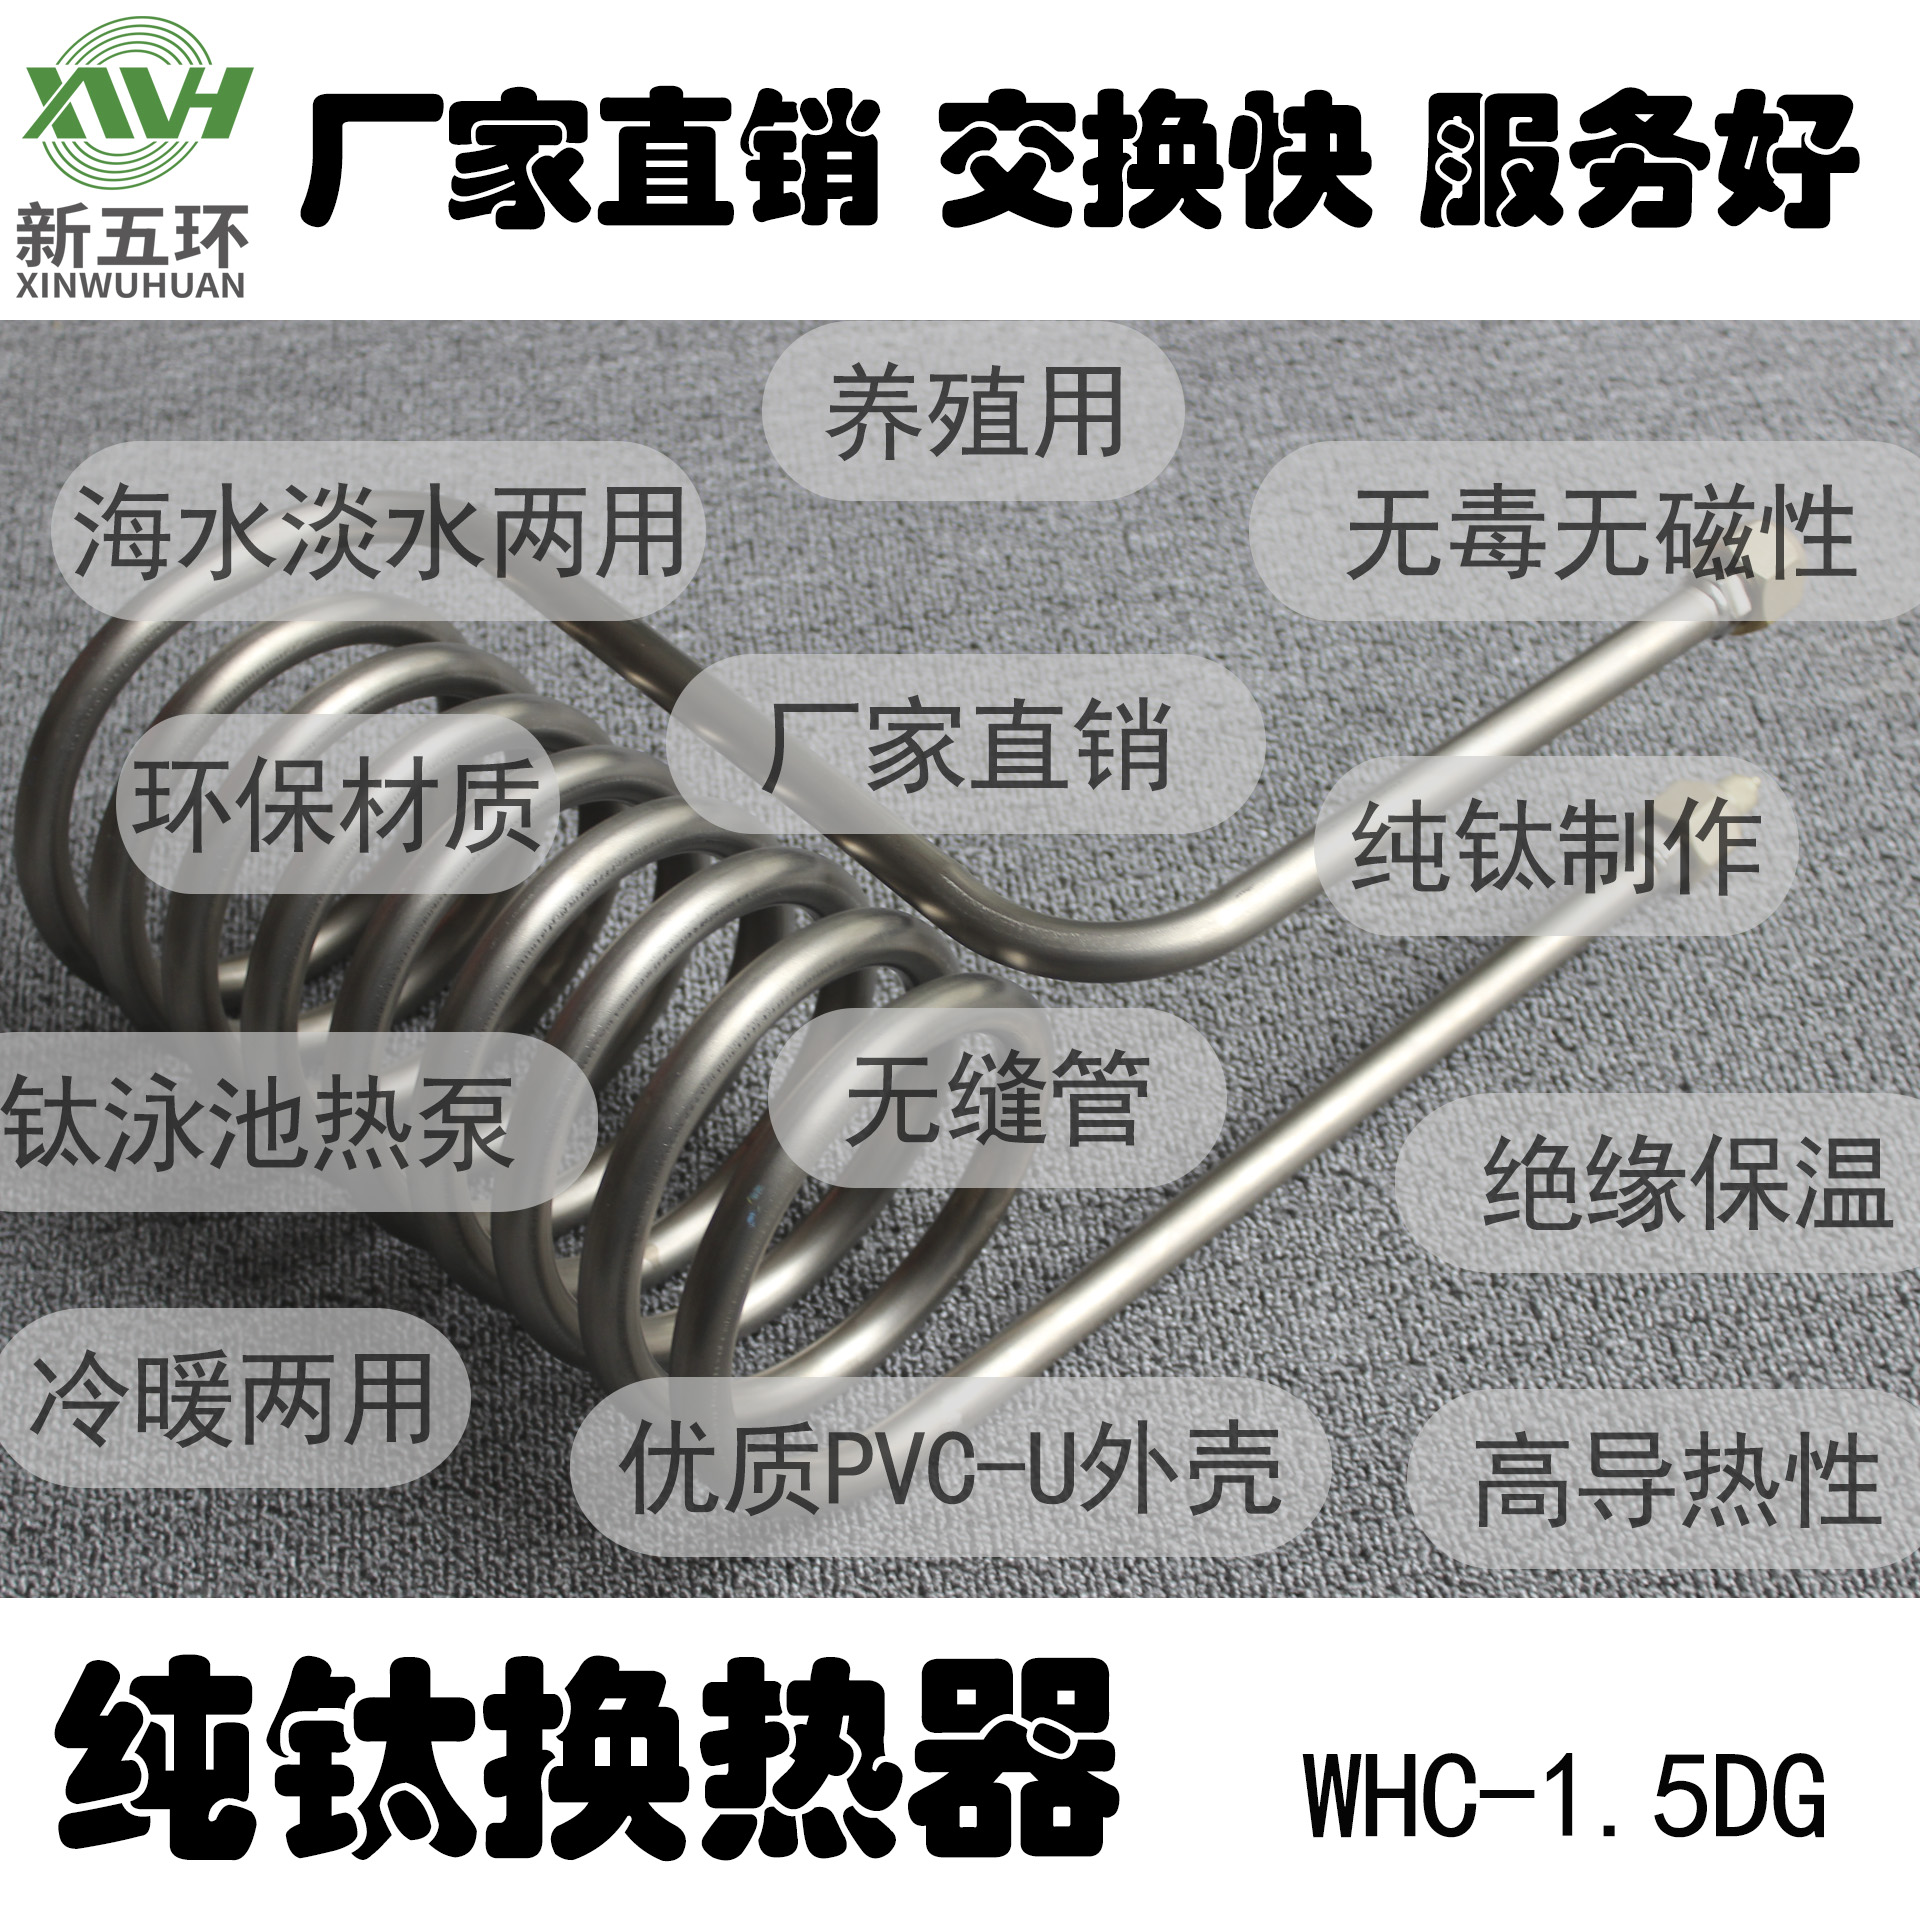 供应新五环WHC-1.5DG公司纯钛换热器钛管蒸发器钛冷凝器空气能热水器